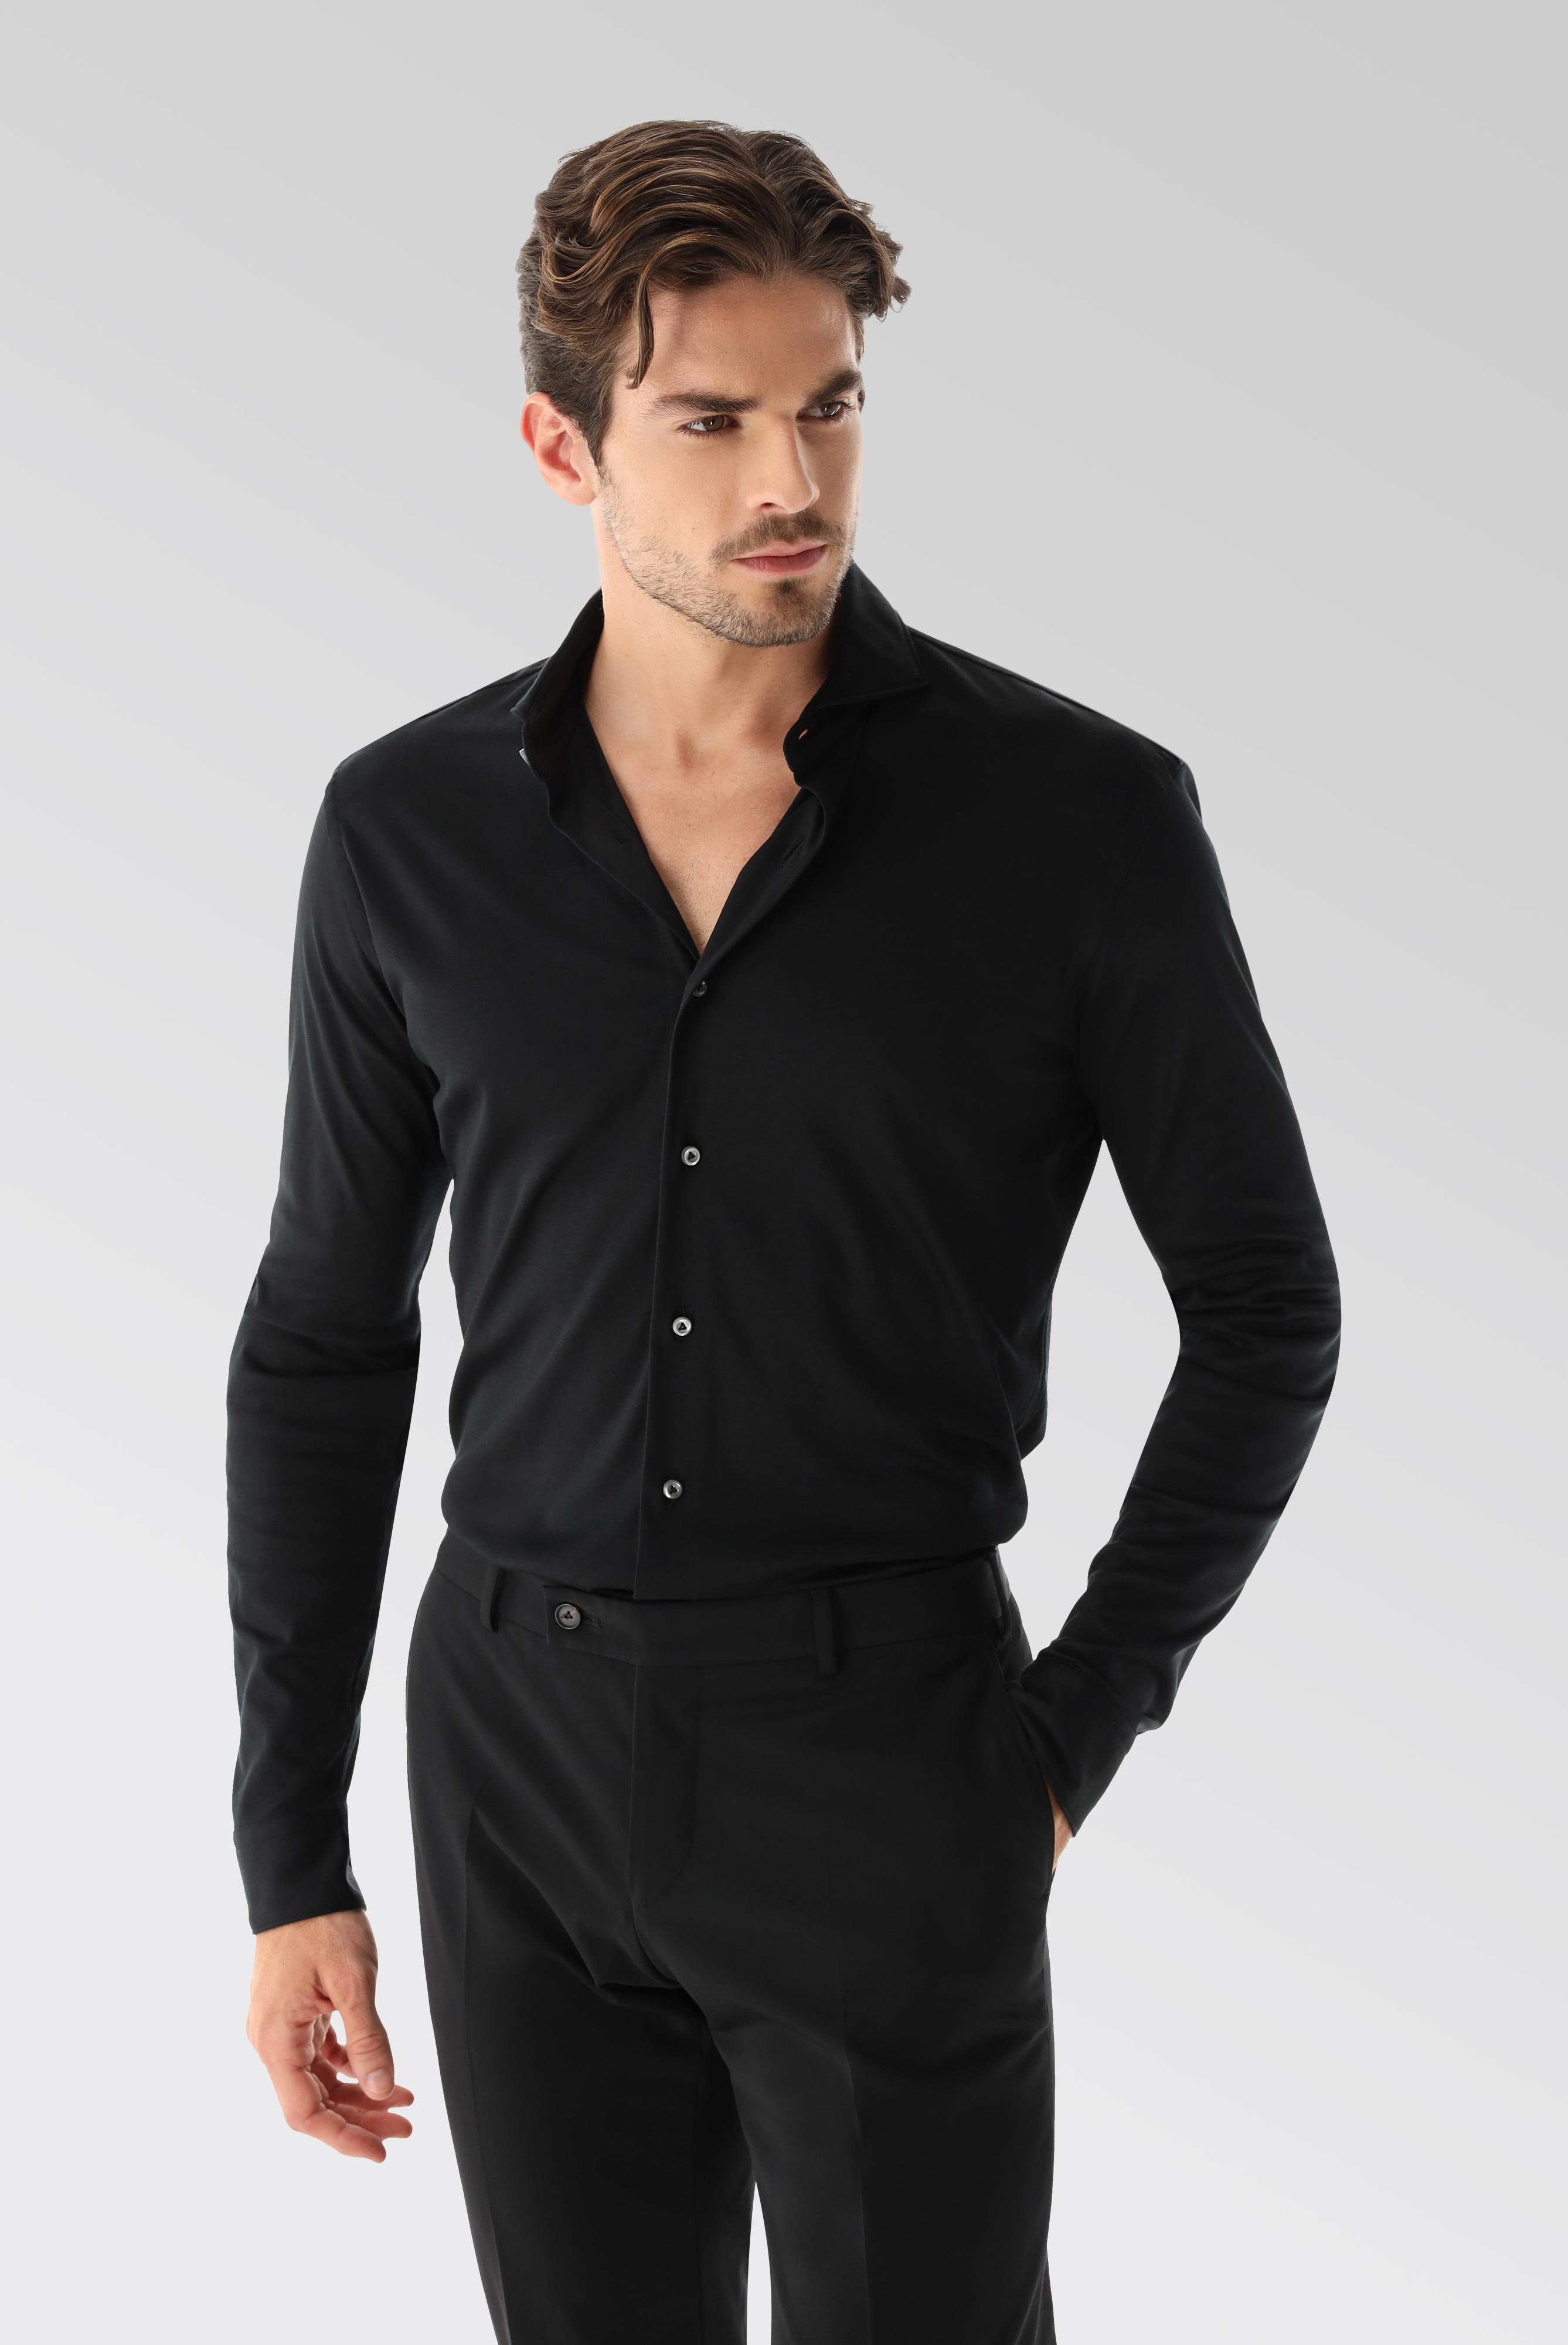 Bügelleichte Hemden+Jersey Hemd mit glänzender Optik Tailor Fit+20.1683.UC.180031.099.X4L